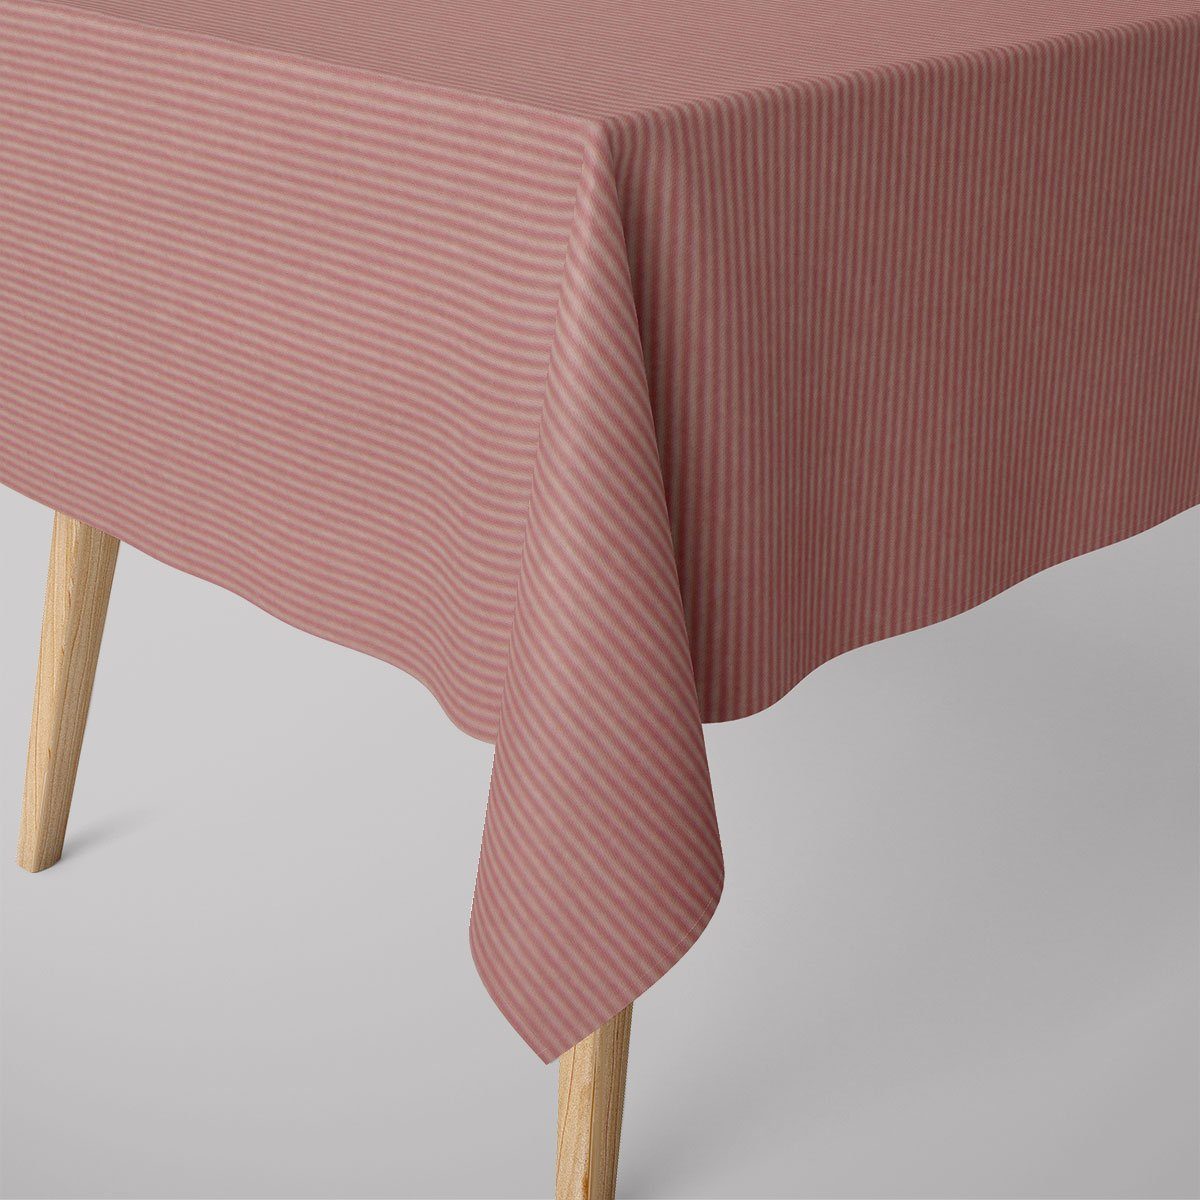 SCHÖNER LEBEN. Tischdecke SCHÖNER LEBEN. Tischdecke Streifen 3mm creme rosa verschiedene Größen, handmade